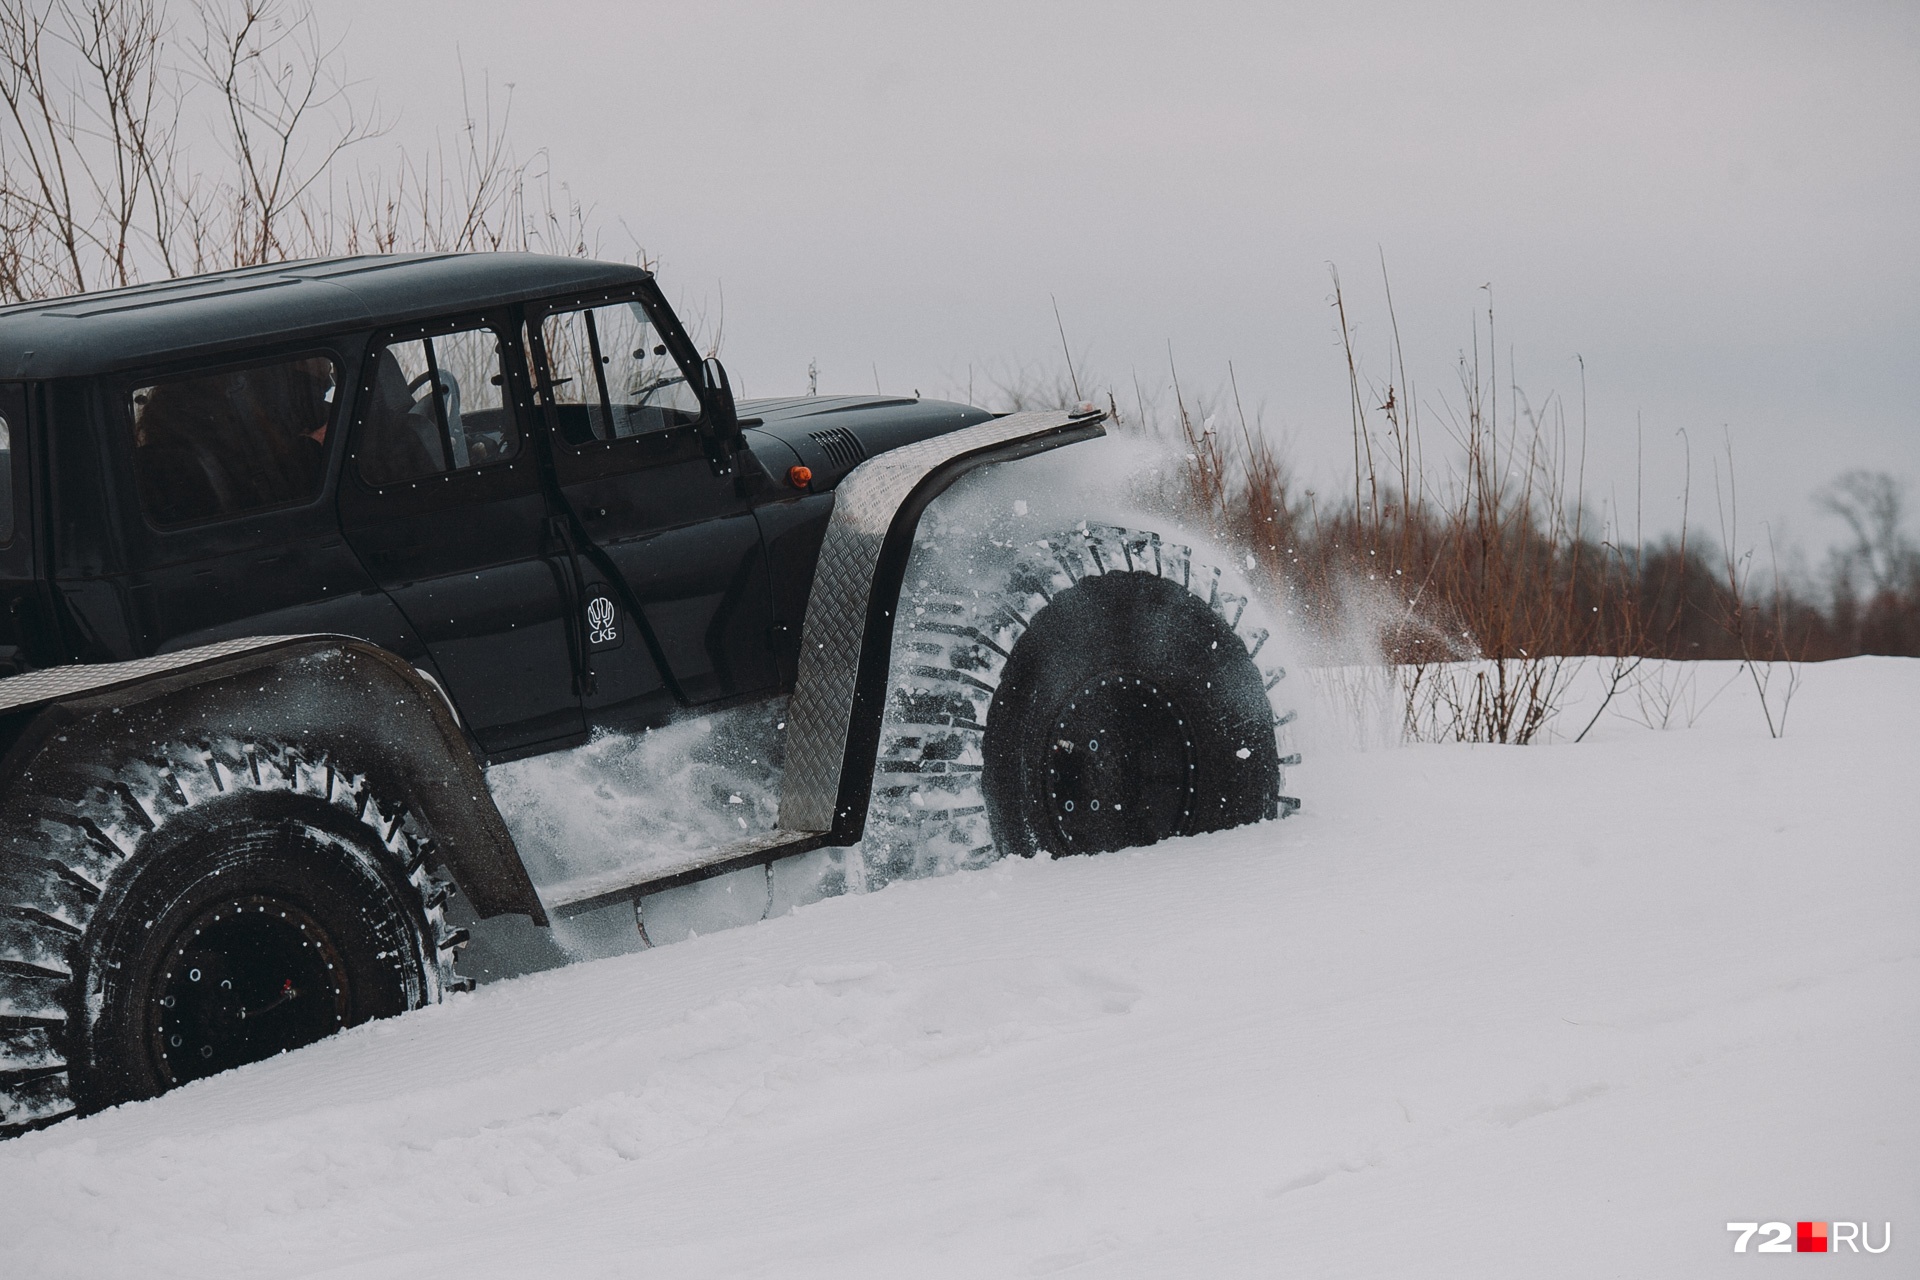 В трудных местах, где много снега или грязи, эта машина может забуксовать ненадолго. Но не стоит переживать, она все равно взберется на любую гору, в чем мы убедились 